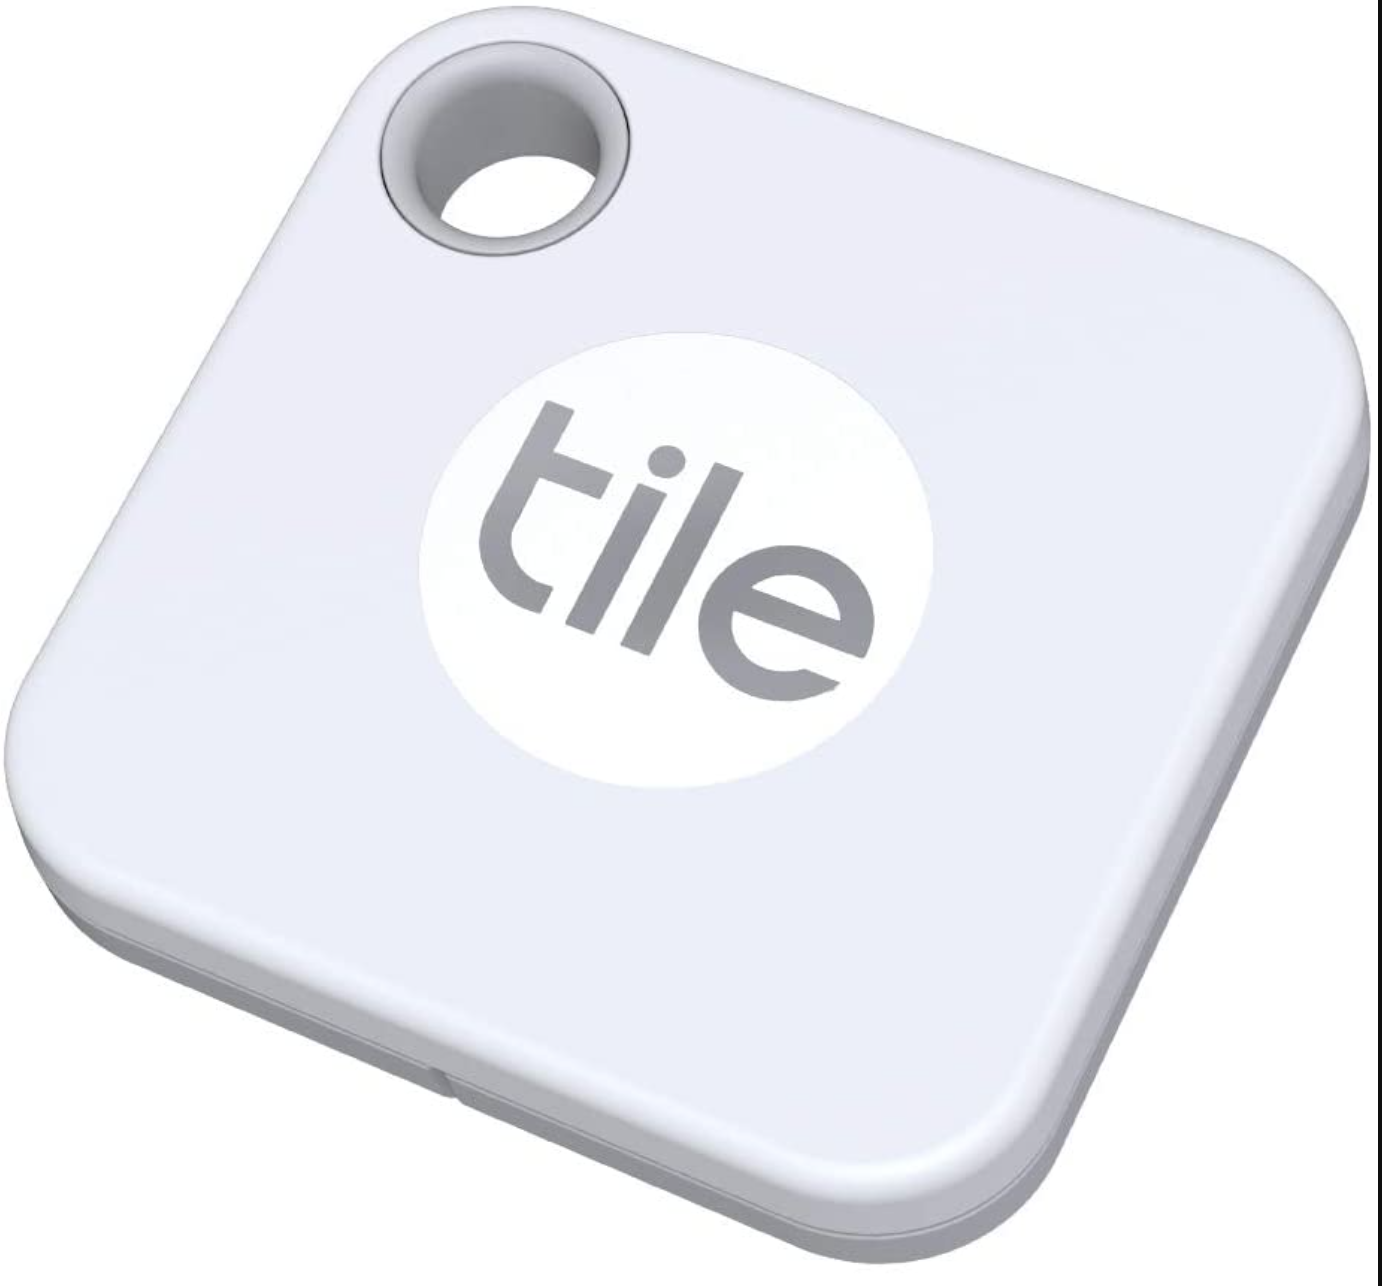 Pour concurrencer les AirTags d'Apple, Tile lancera un tracker compatible ultra-wideband avec une app AR